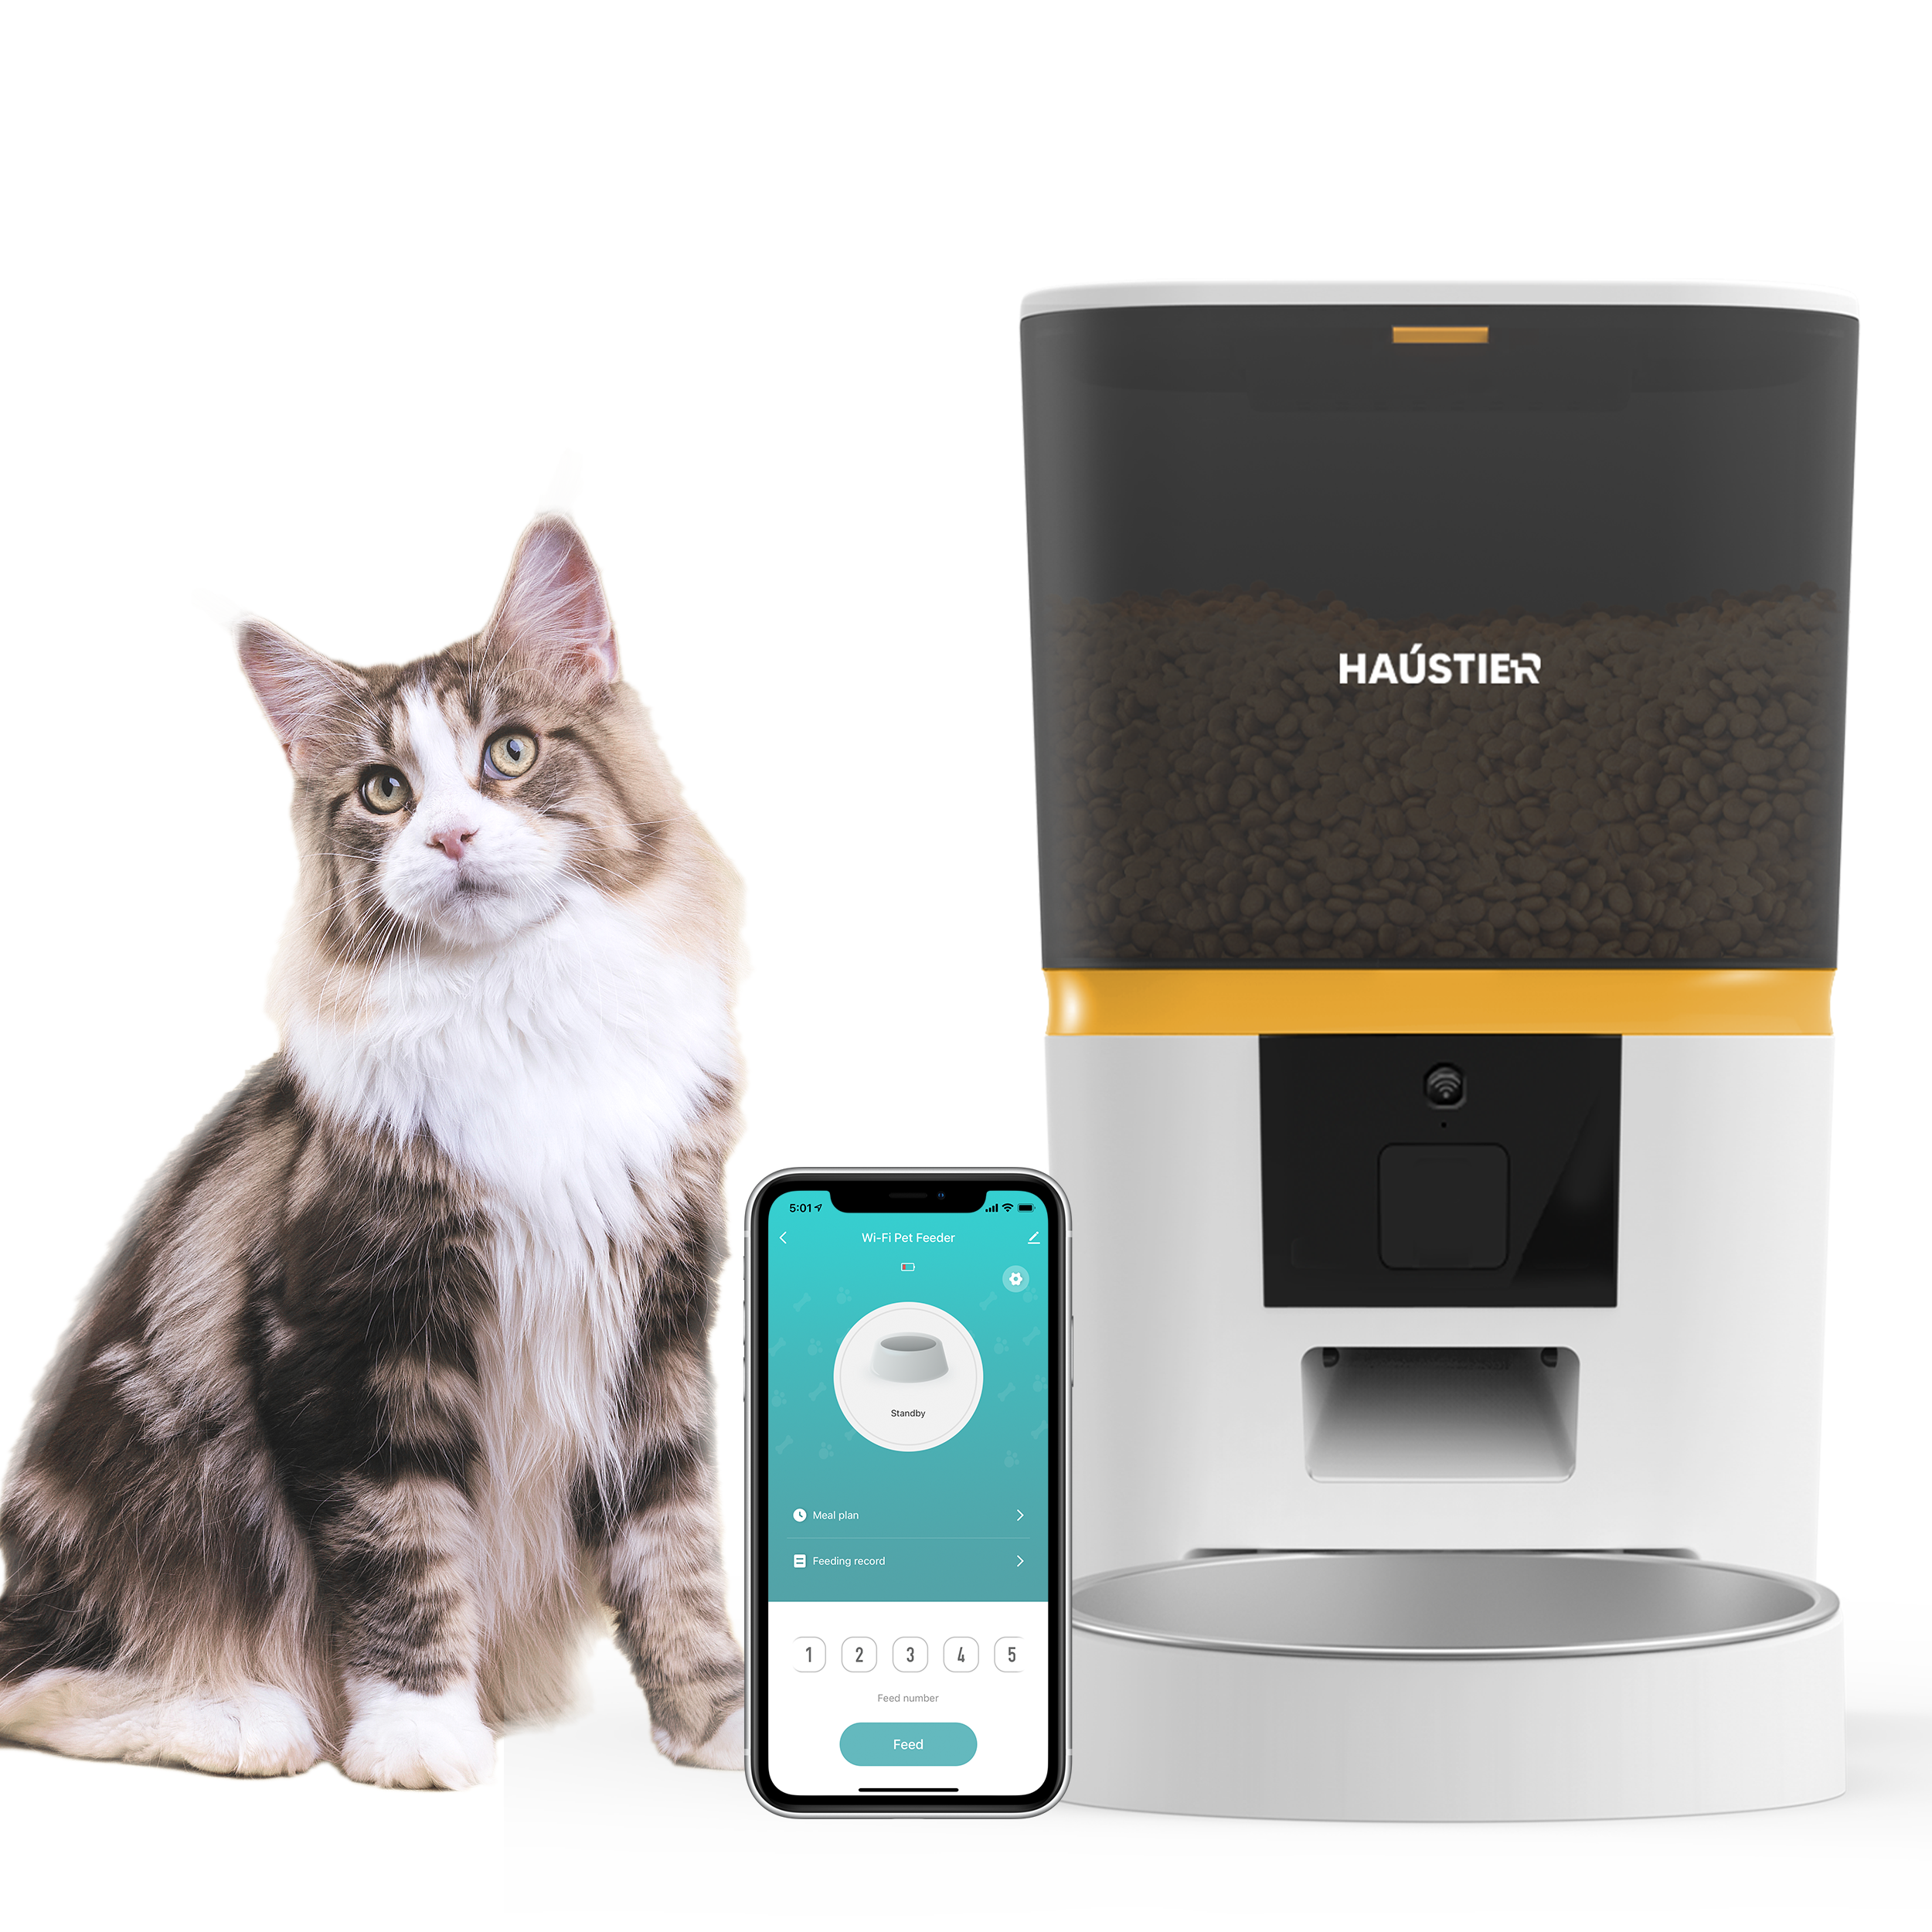 Haustier QQ003-V2 Akıllı Kedi Köpek Otomatik Mama Kabı , Tuya App-Wifi Uzaktan Kontrol, 6Lt hazne, Metal Kase (Beyaz)